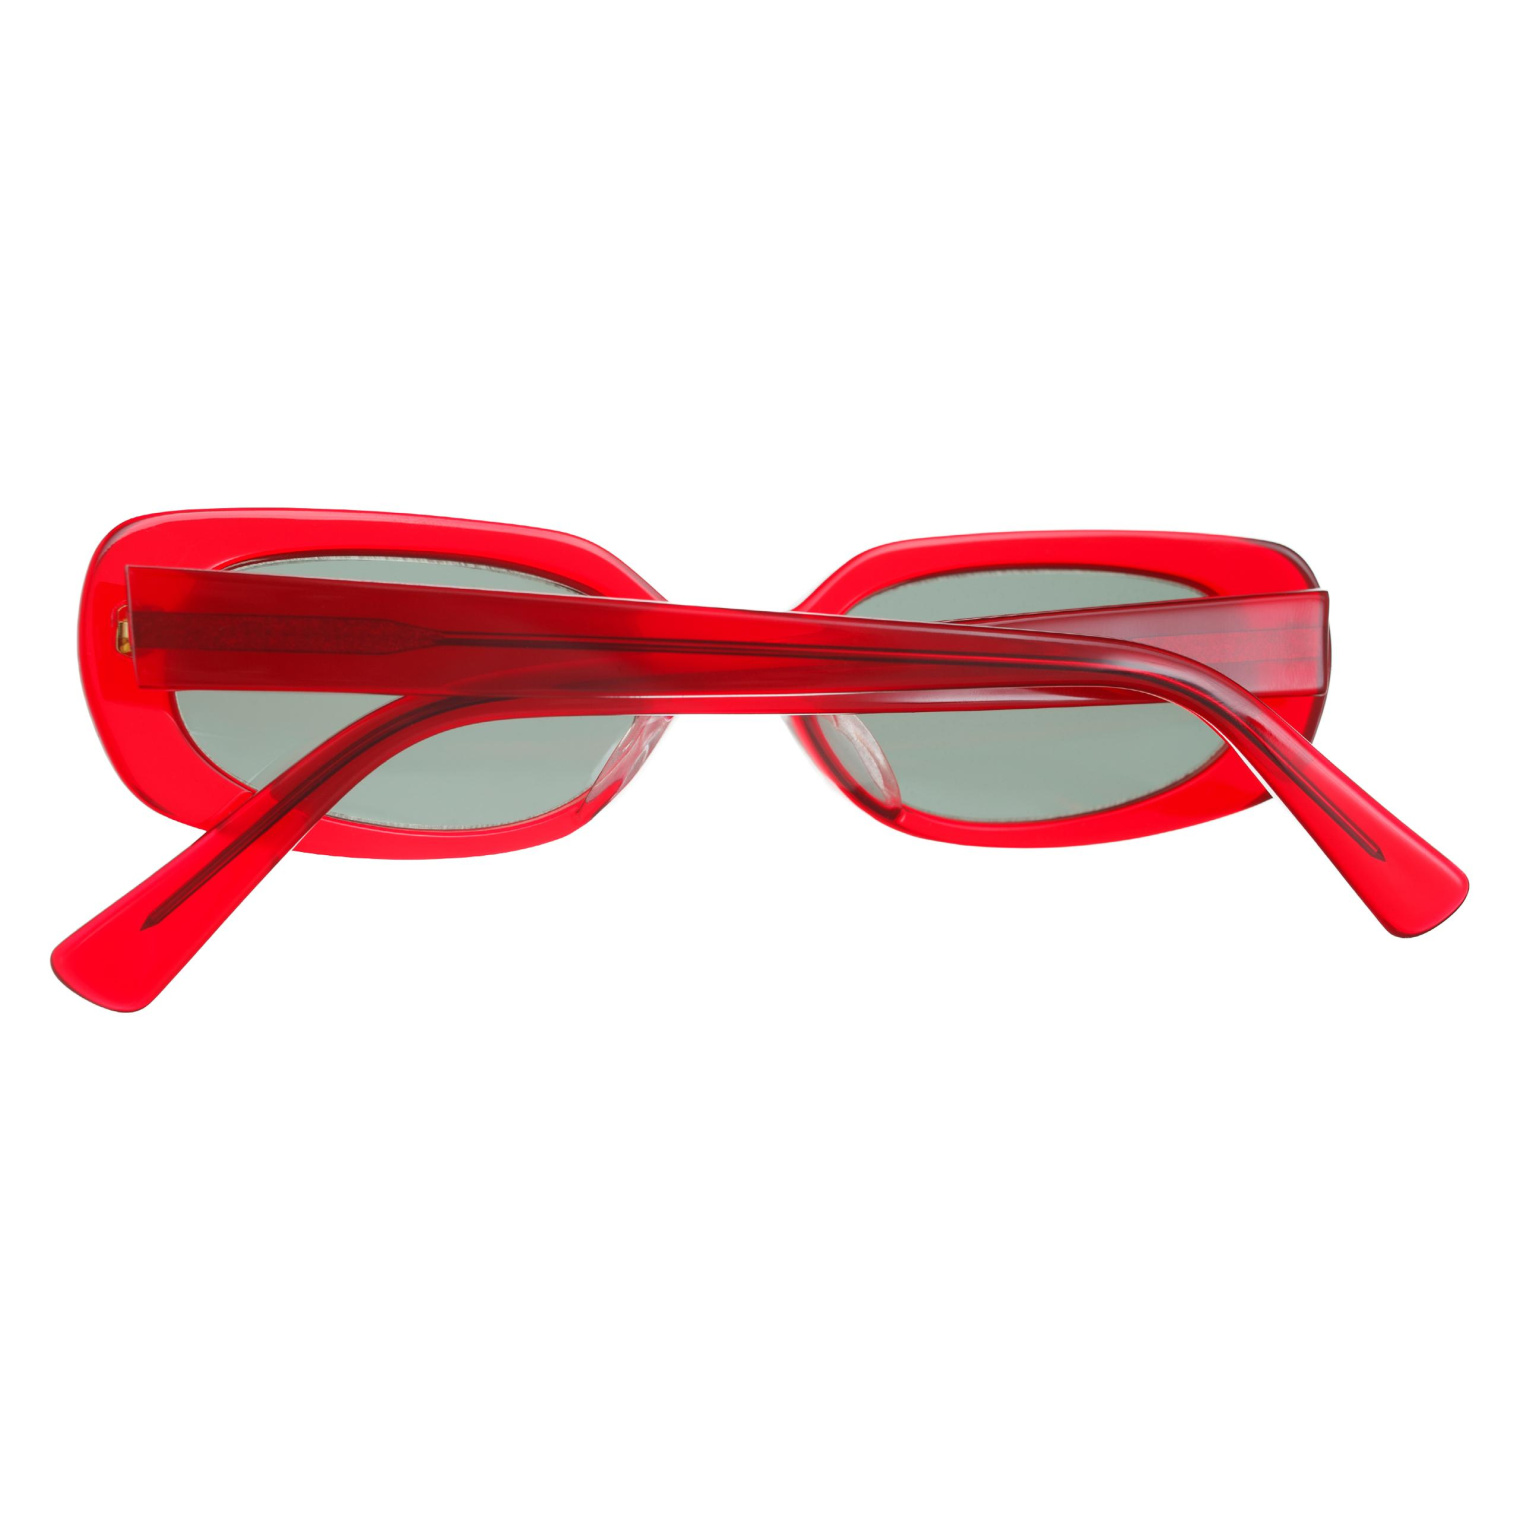 Undercover Овальные очки с красной оправой